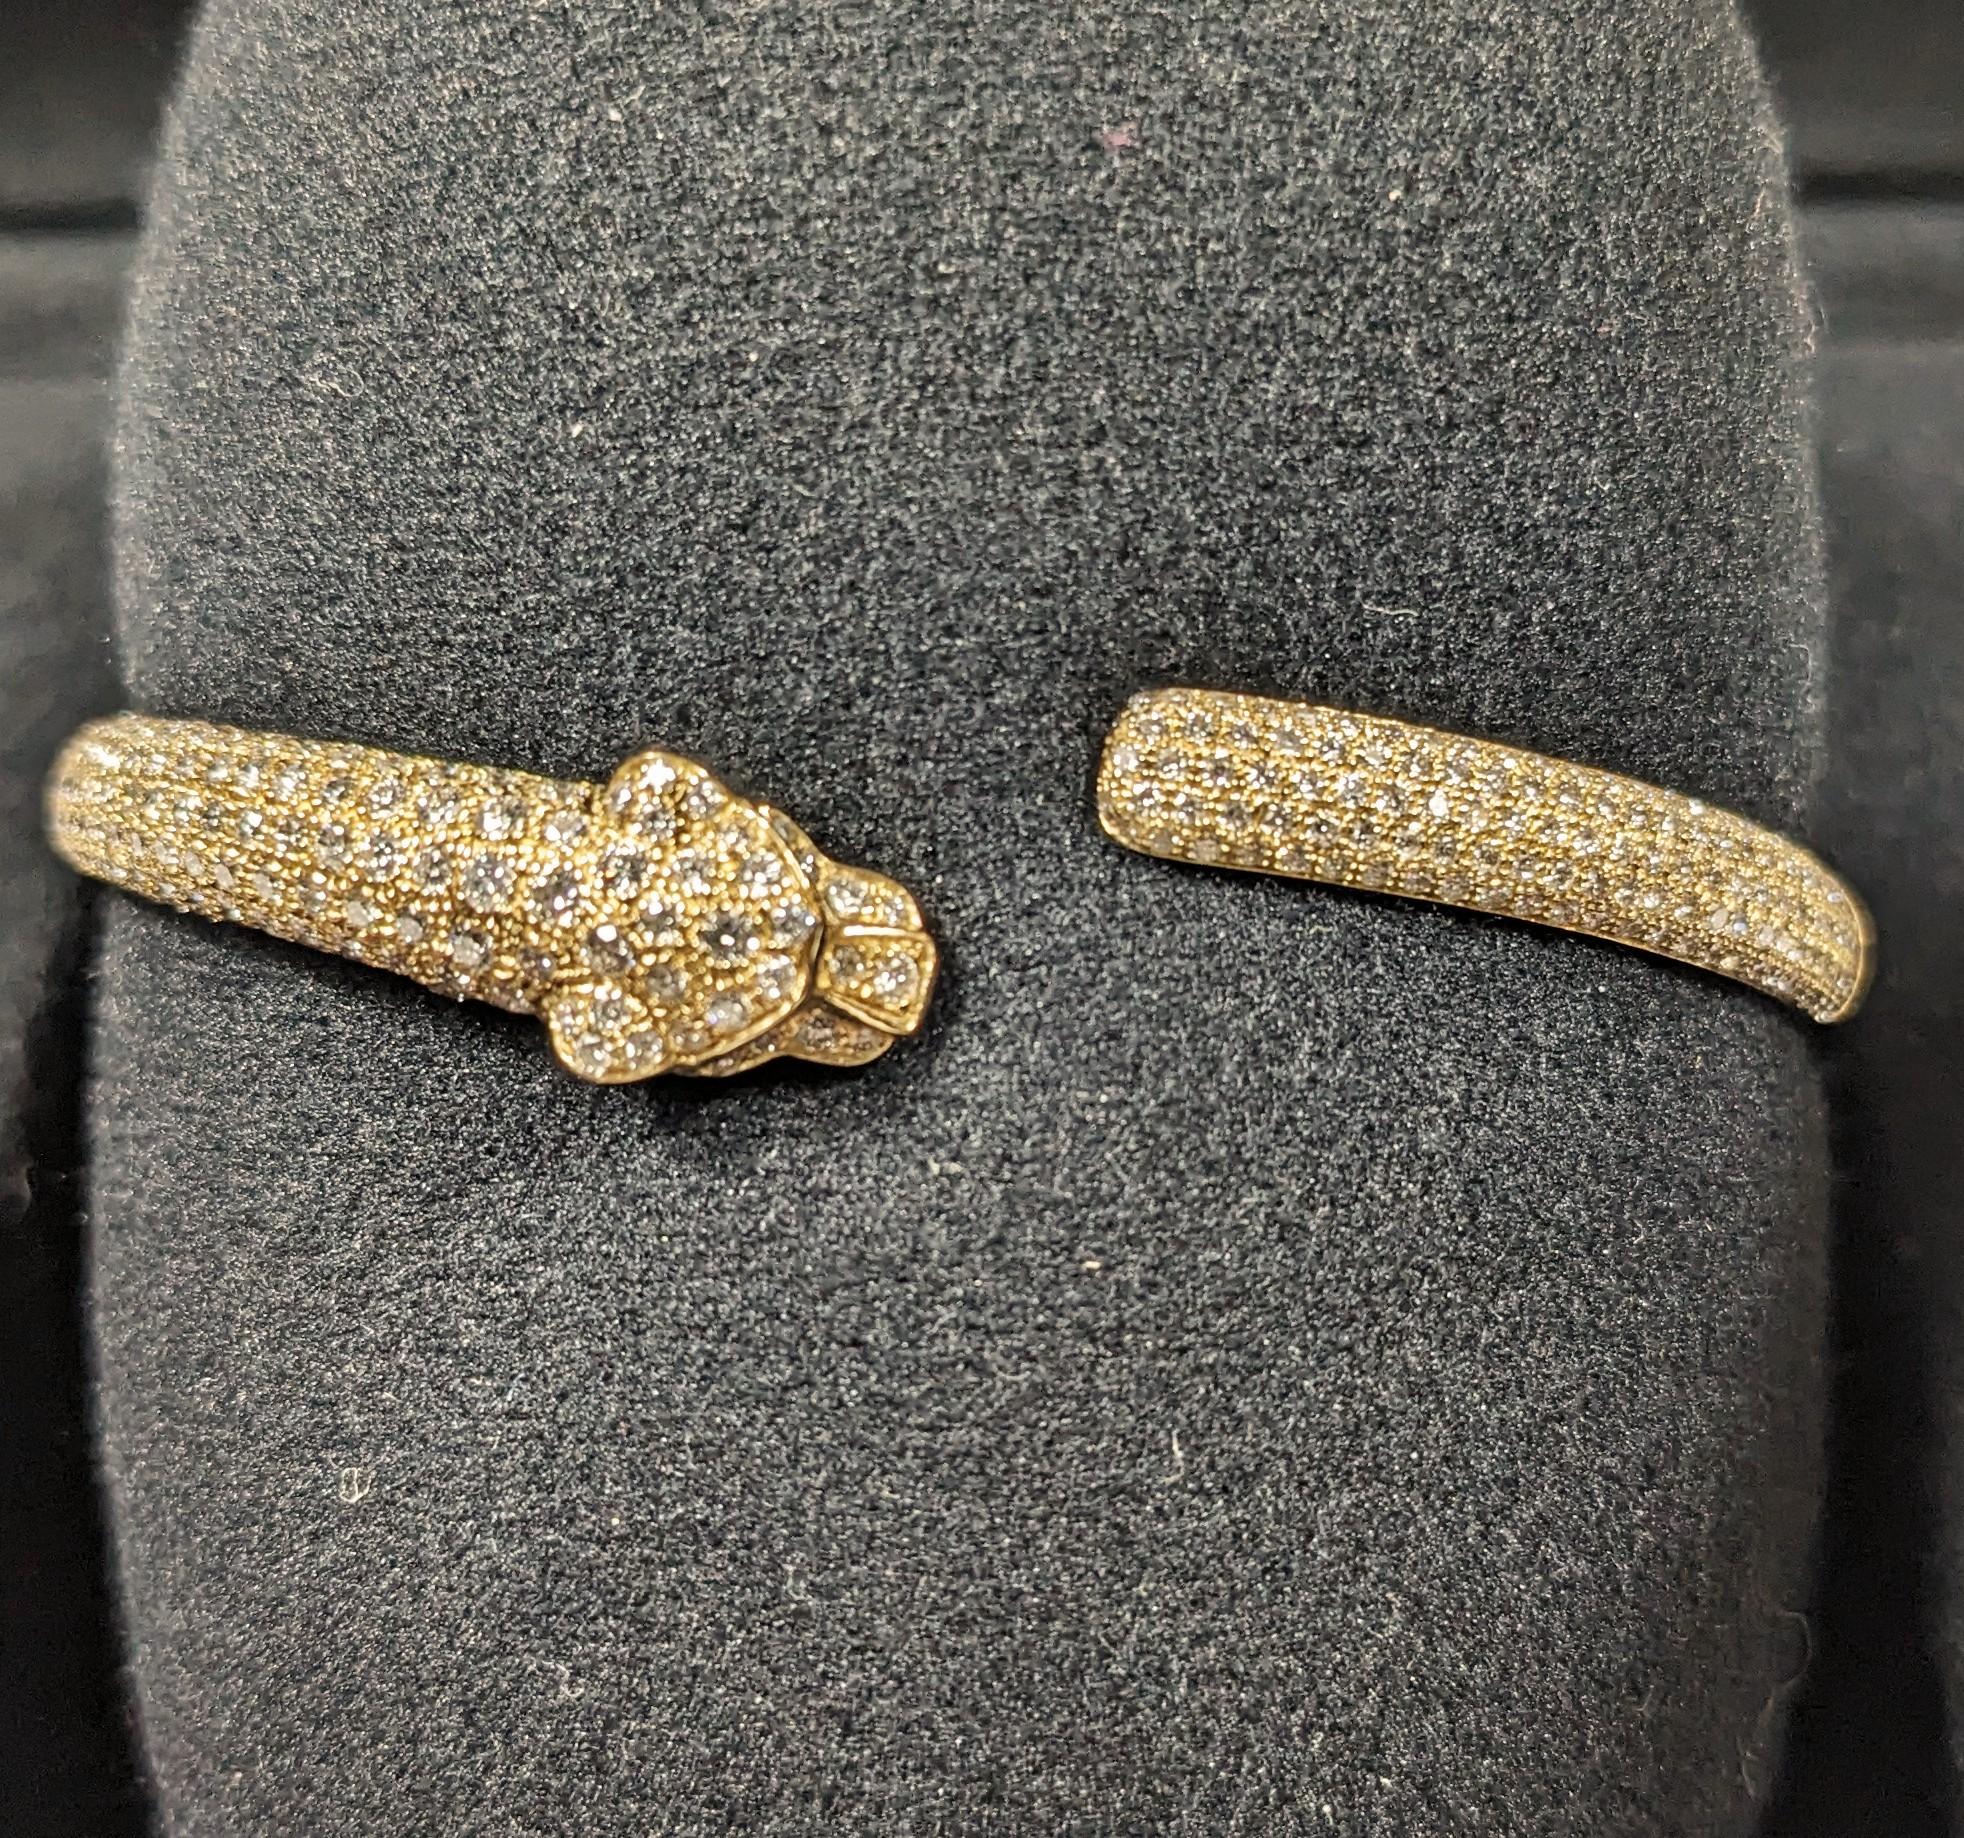 Bracelet Panthère de Cartier en or 18k avec diamants, émeraude et onyx en taille 17. 
Original au magasin à 51.500€
Avec boîte et papiers

Les Jewell font partie de la ménagerie joaillière de Cartier depuis le début du 20e siècle. La Panthère est